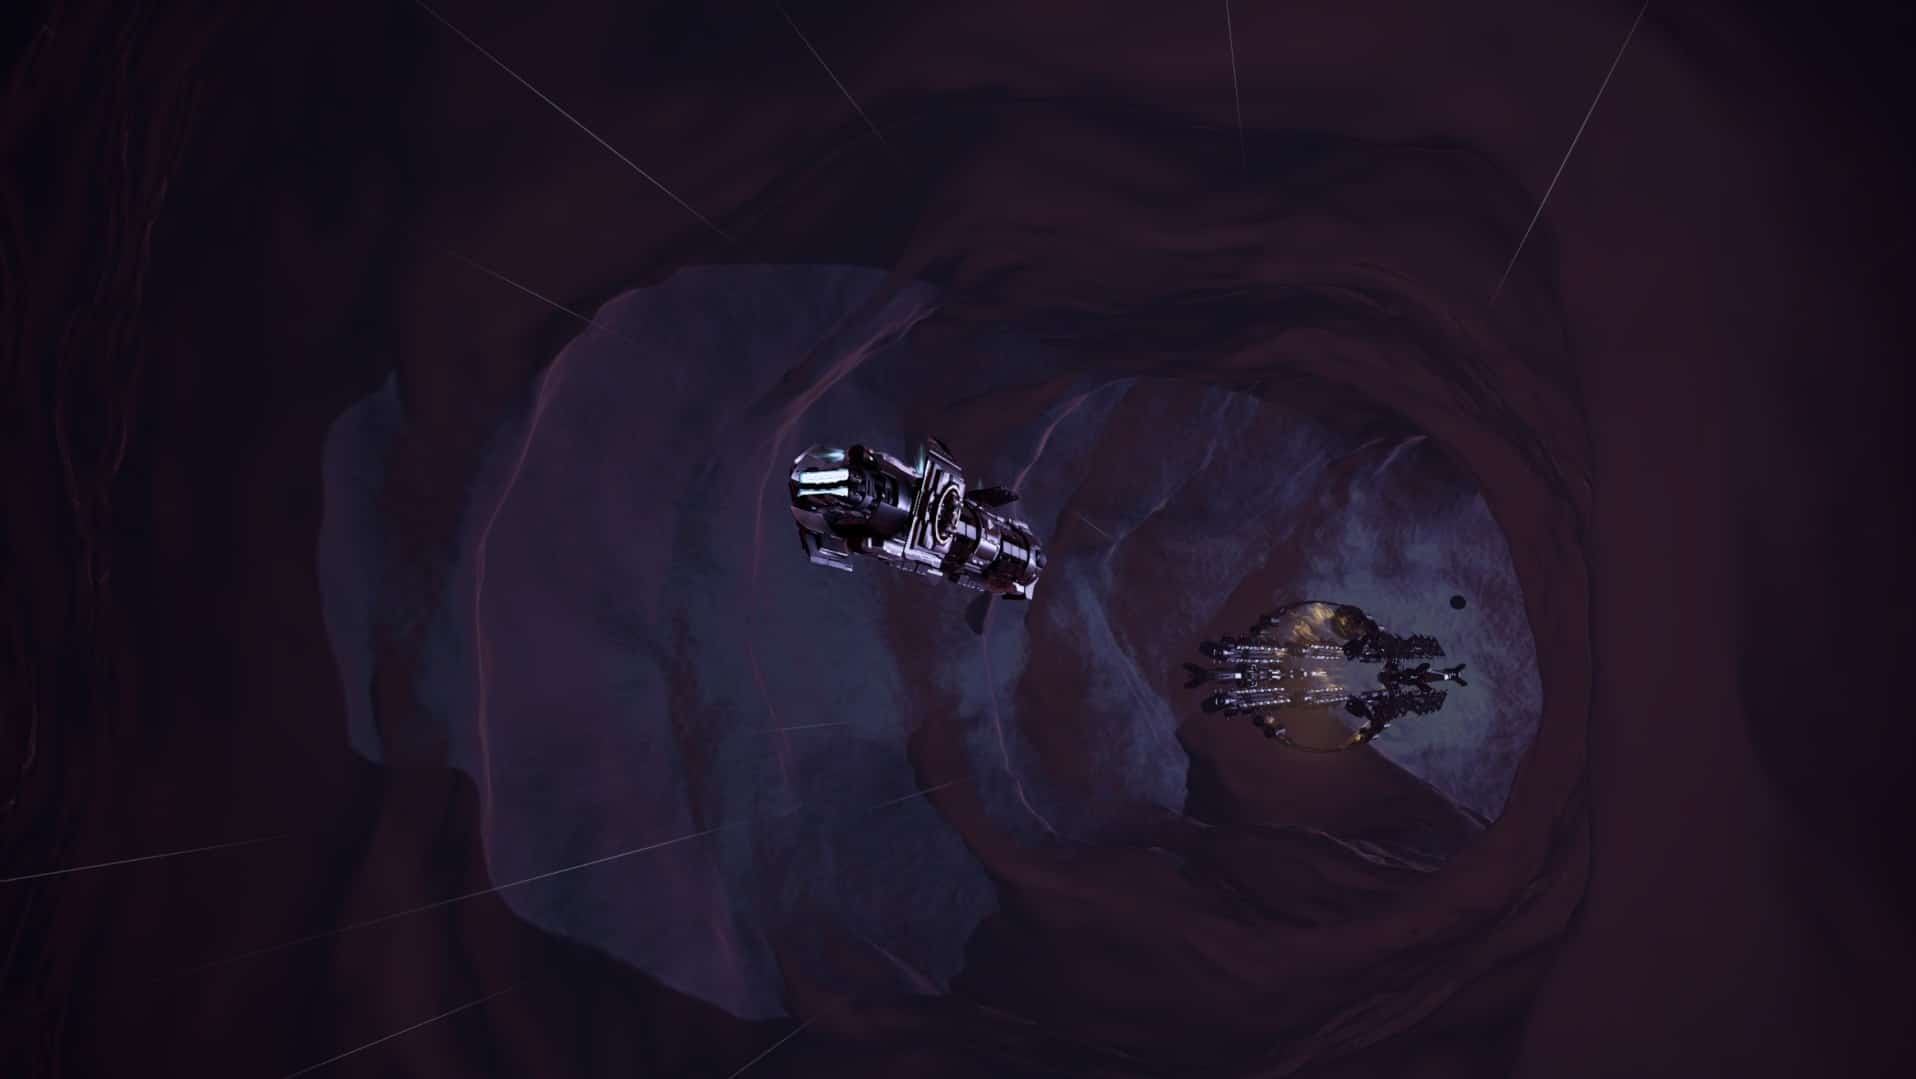 Windfall est entièrement entouré d'une sorte de ... d'une grotte. Ou bien s'agit-il du gosier d'un monstre de l'espace ? En tout cas, il est assez grand pour contenir des planètes et des étoiles entières.